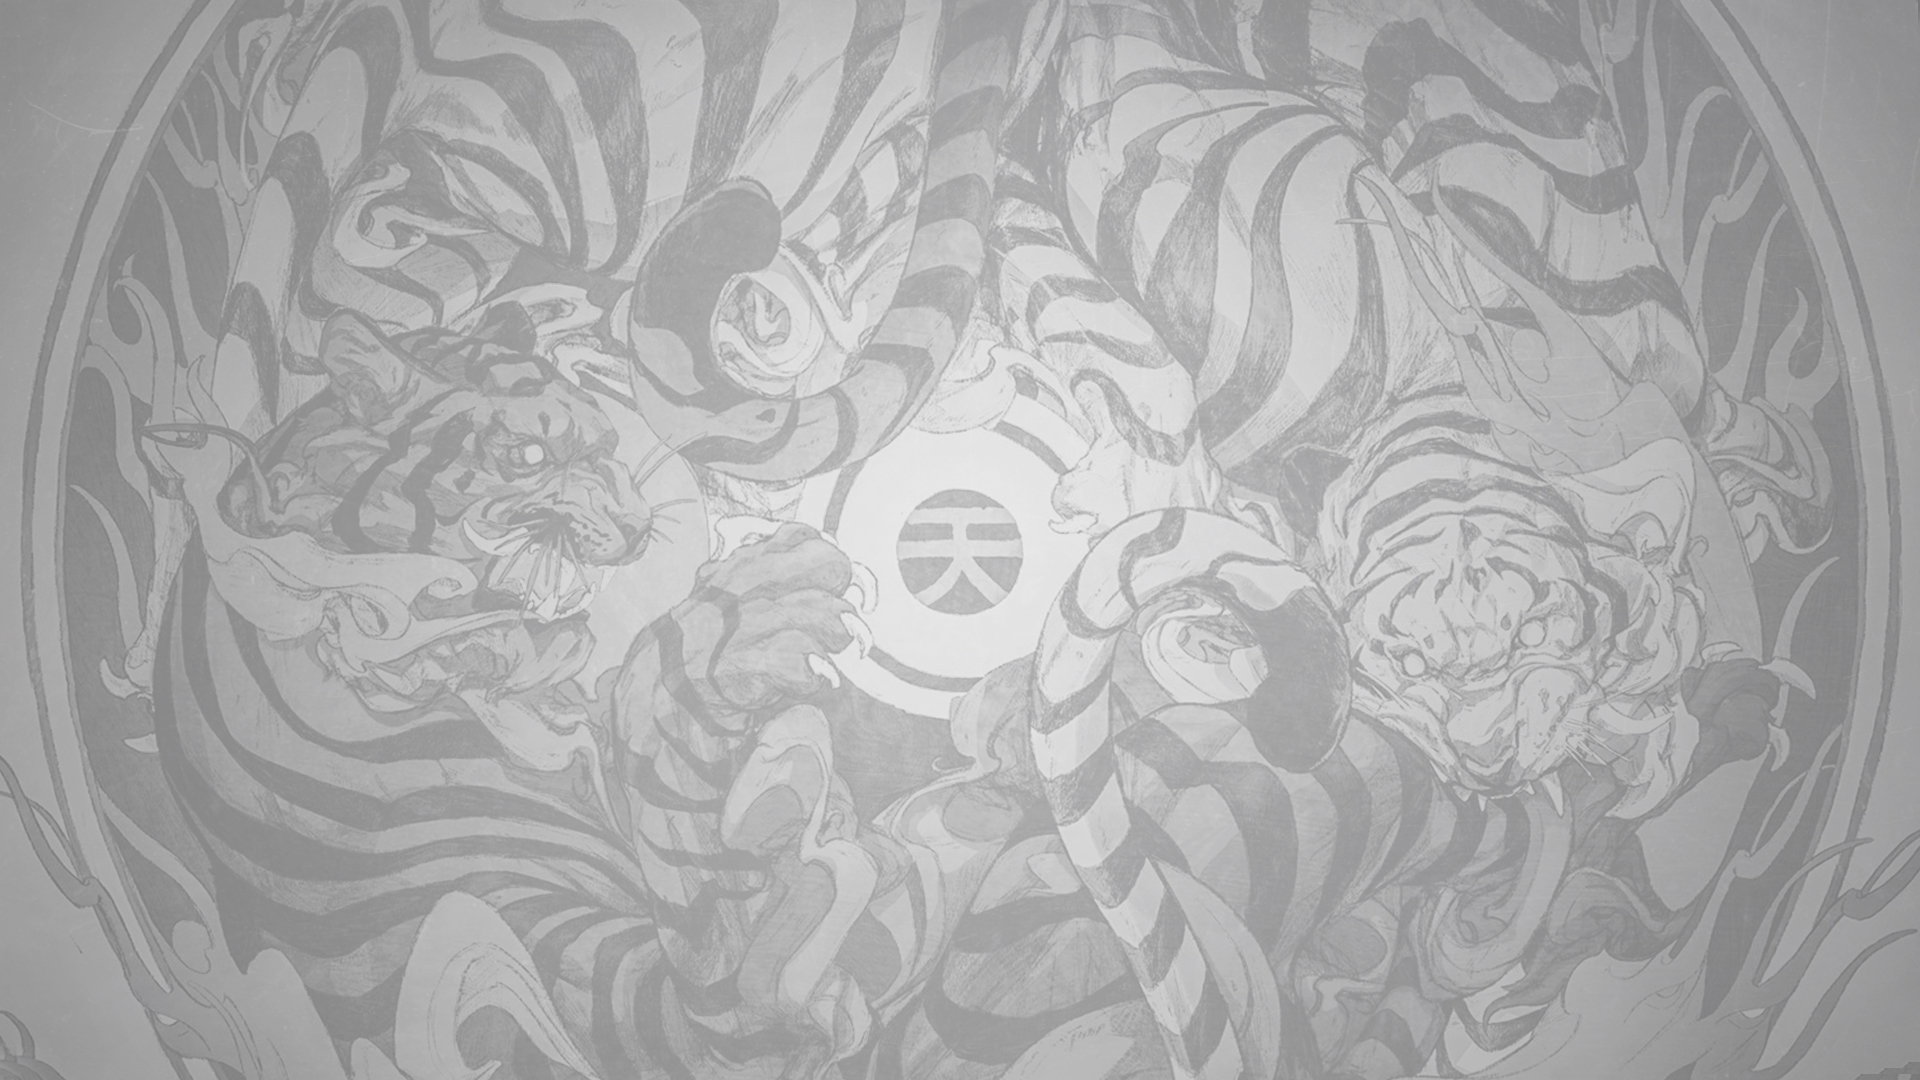 General 1920x1080 minimalism tattoo tiger animal print illustration fan art drawn texture Japan white gray digital art